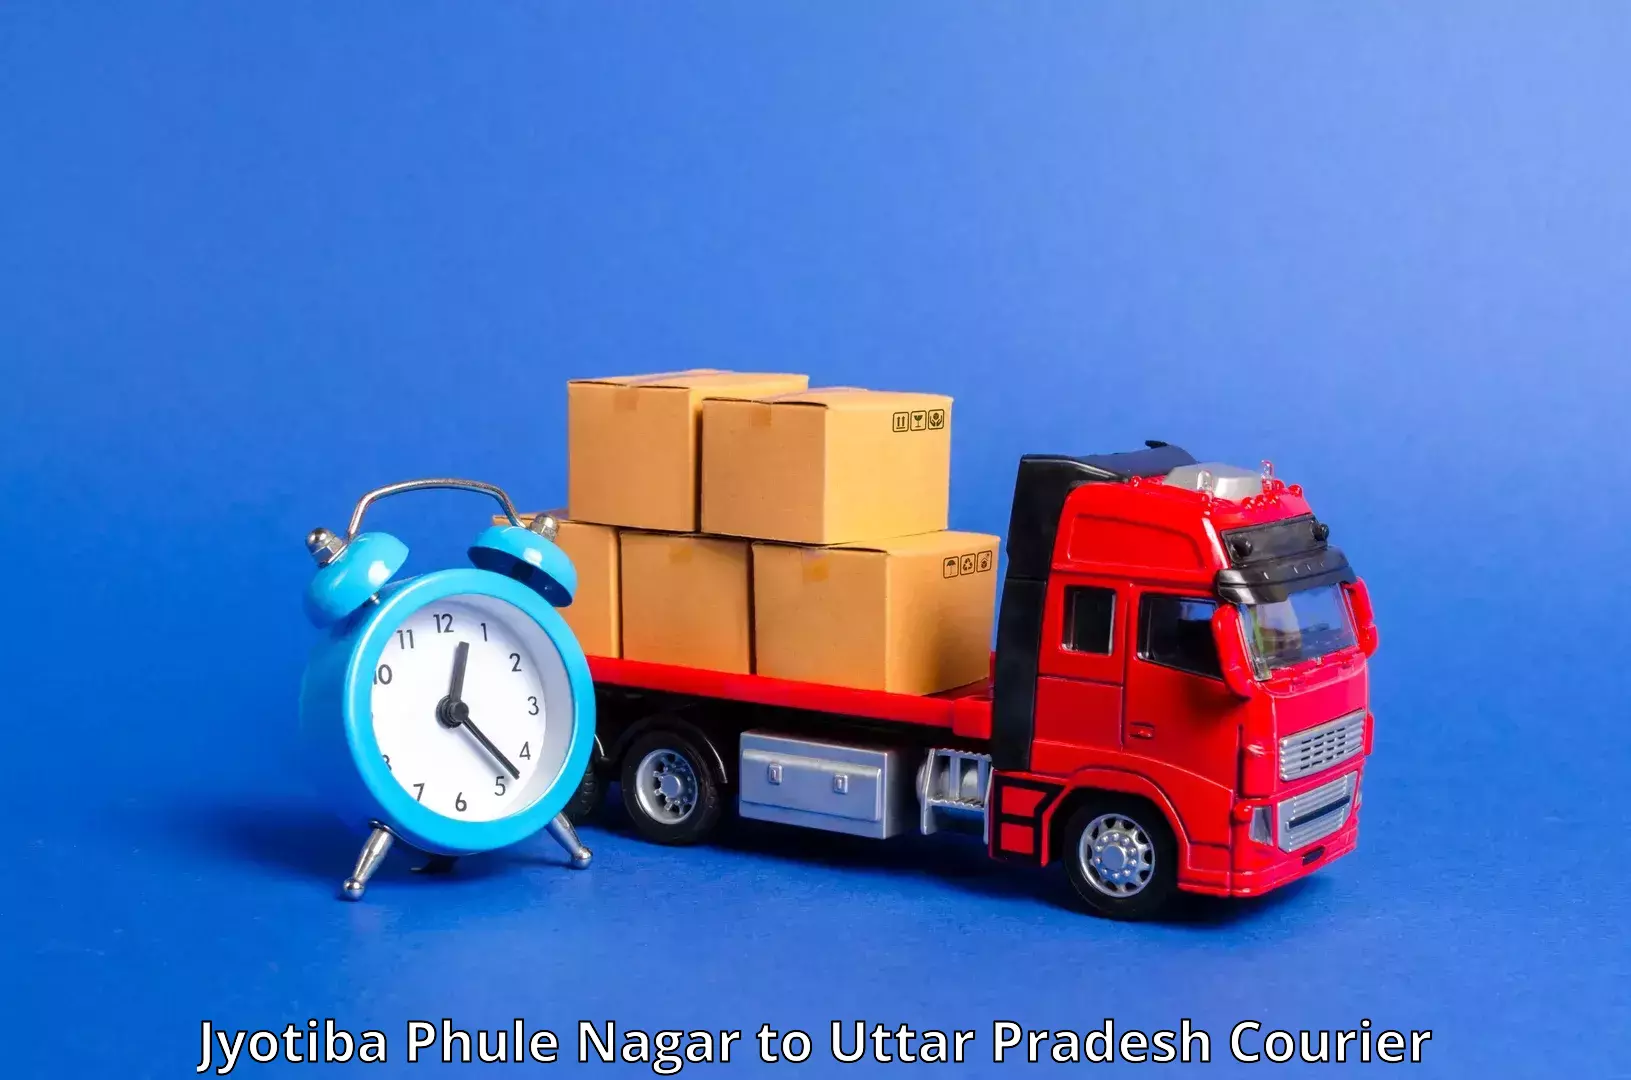 Versatile courier offerings in Jyotiba Phule Nagar to Agra